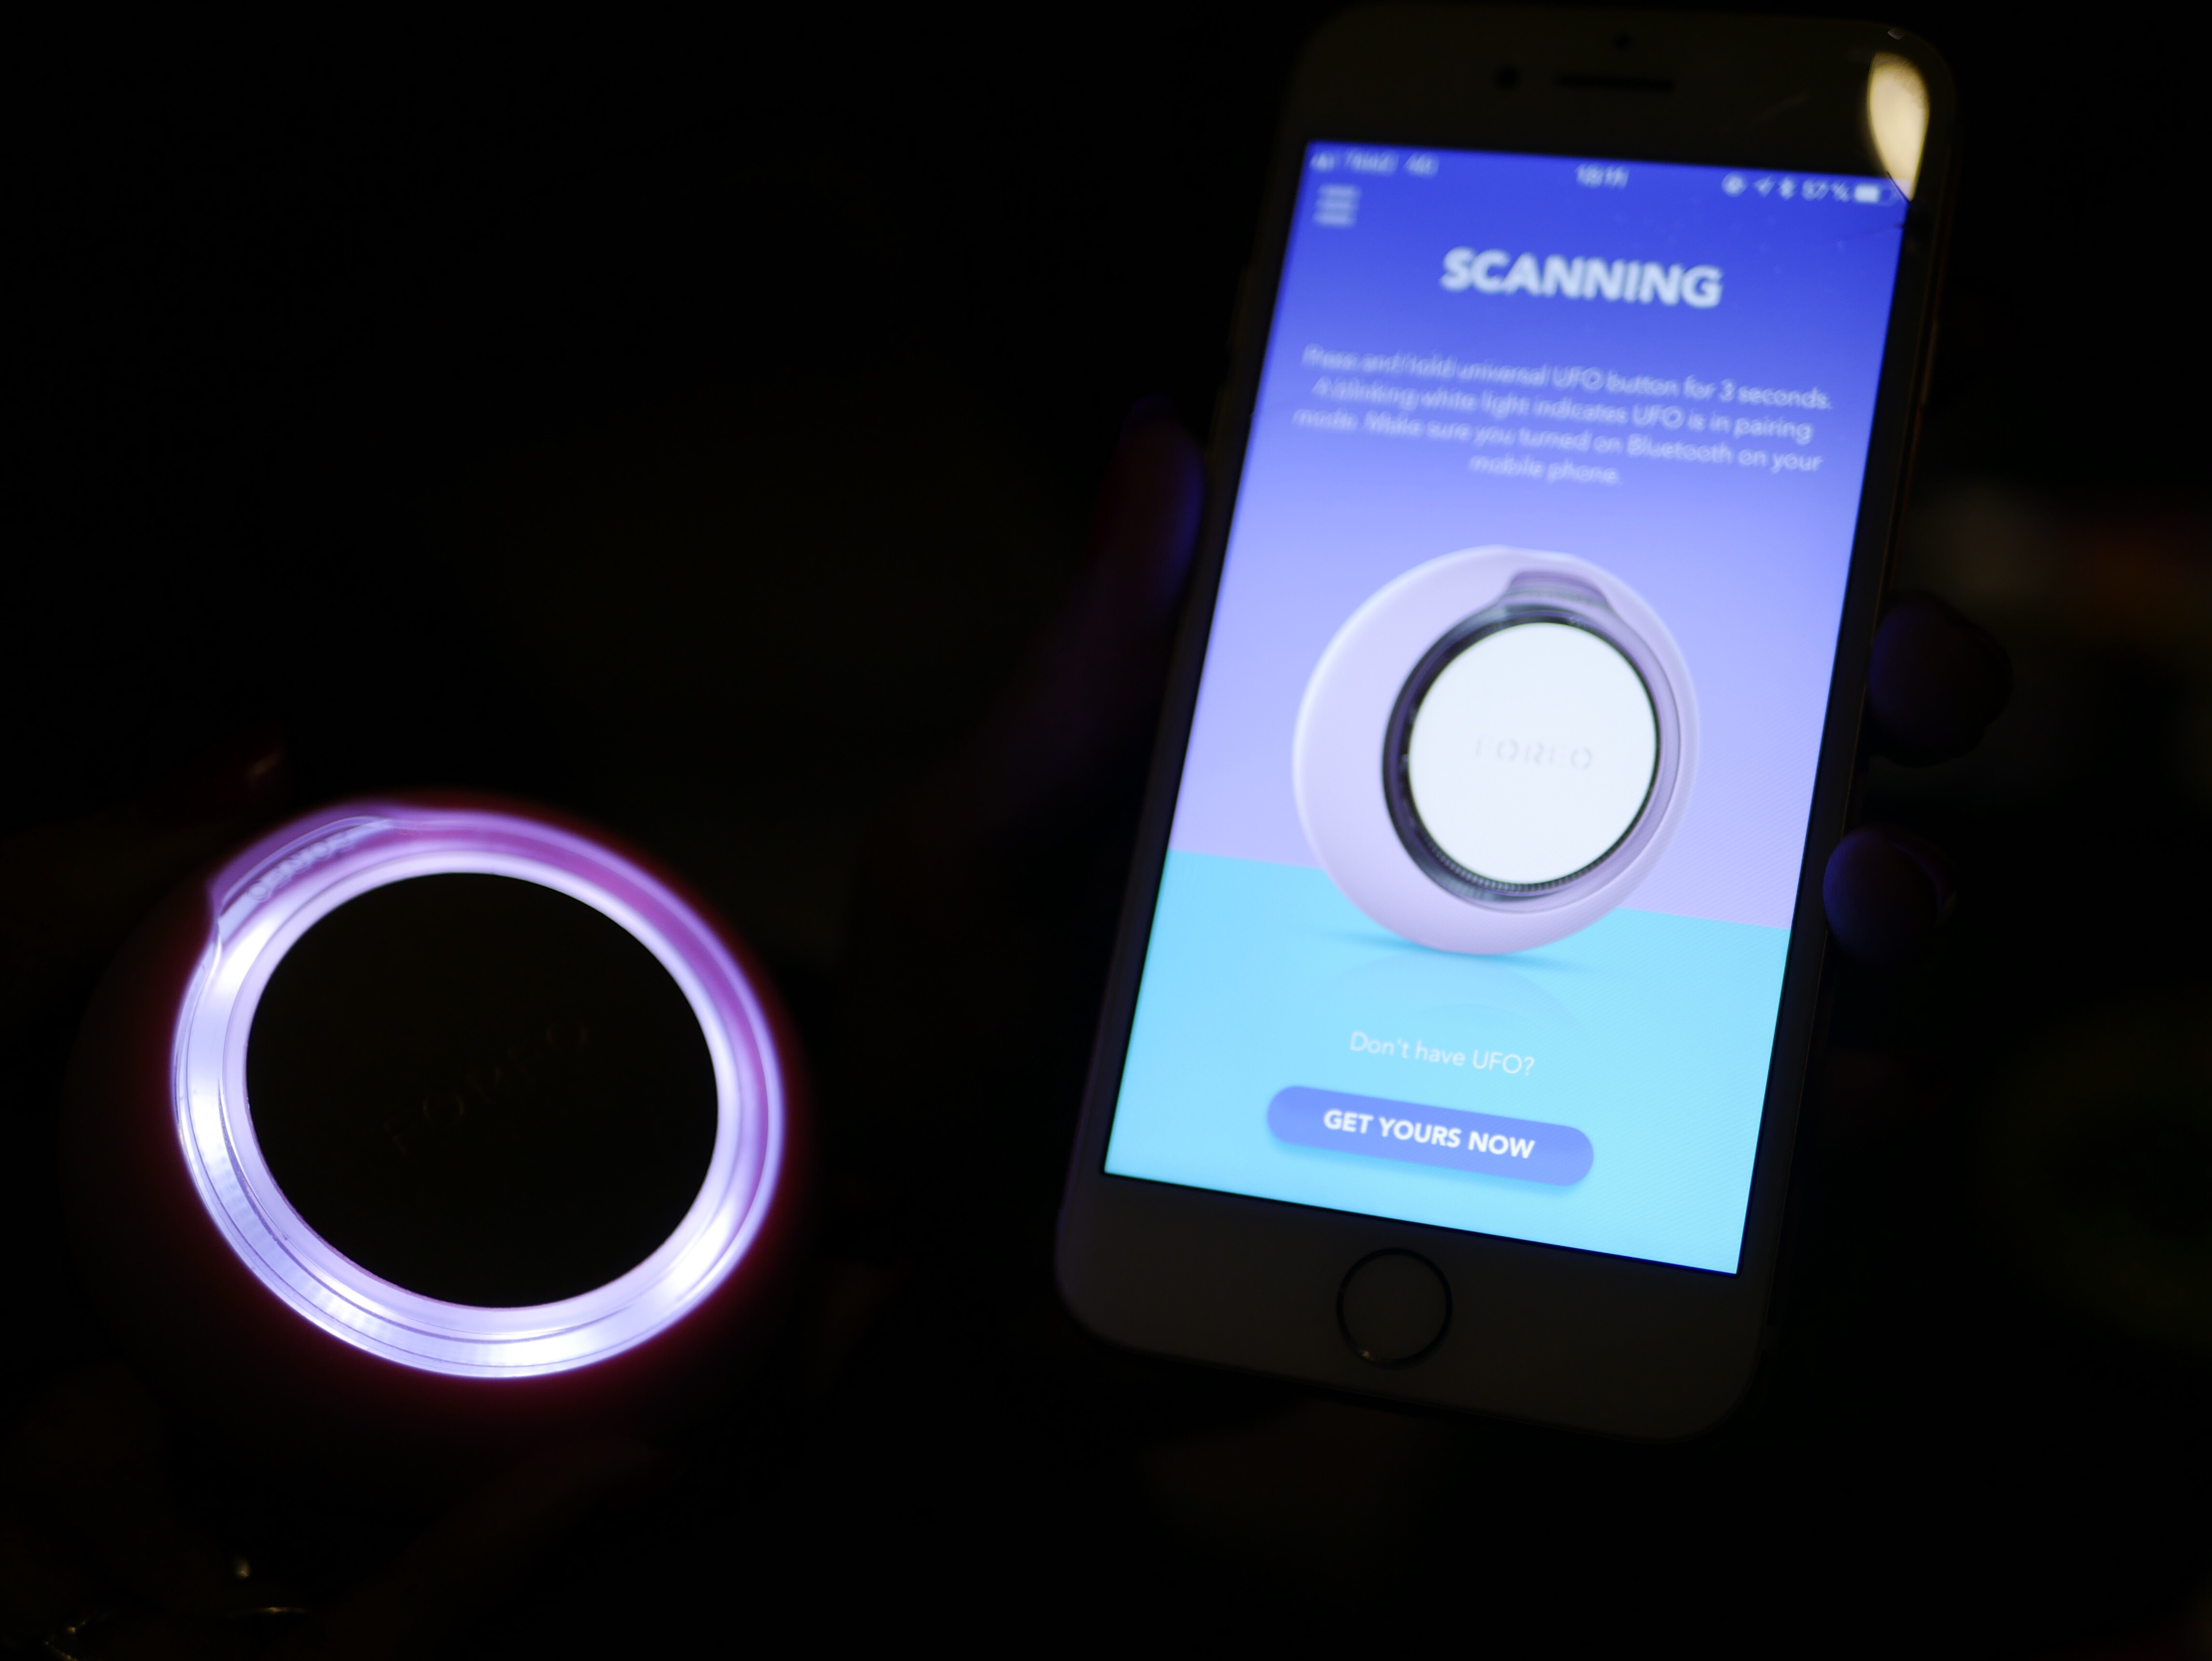 Du kopplar Foreo UFO till din en app i din smartphone.